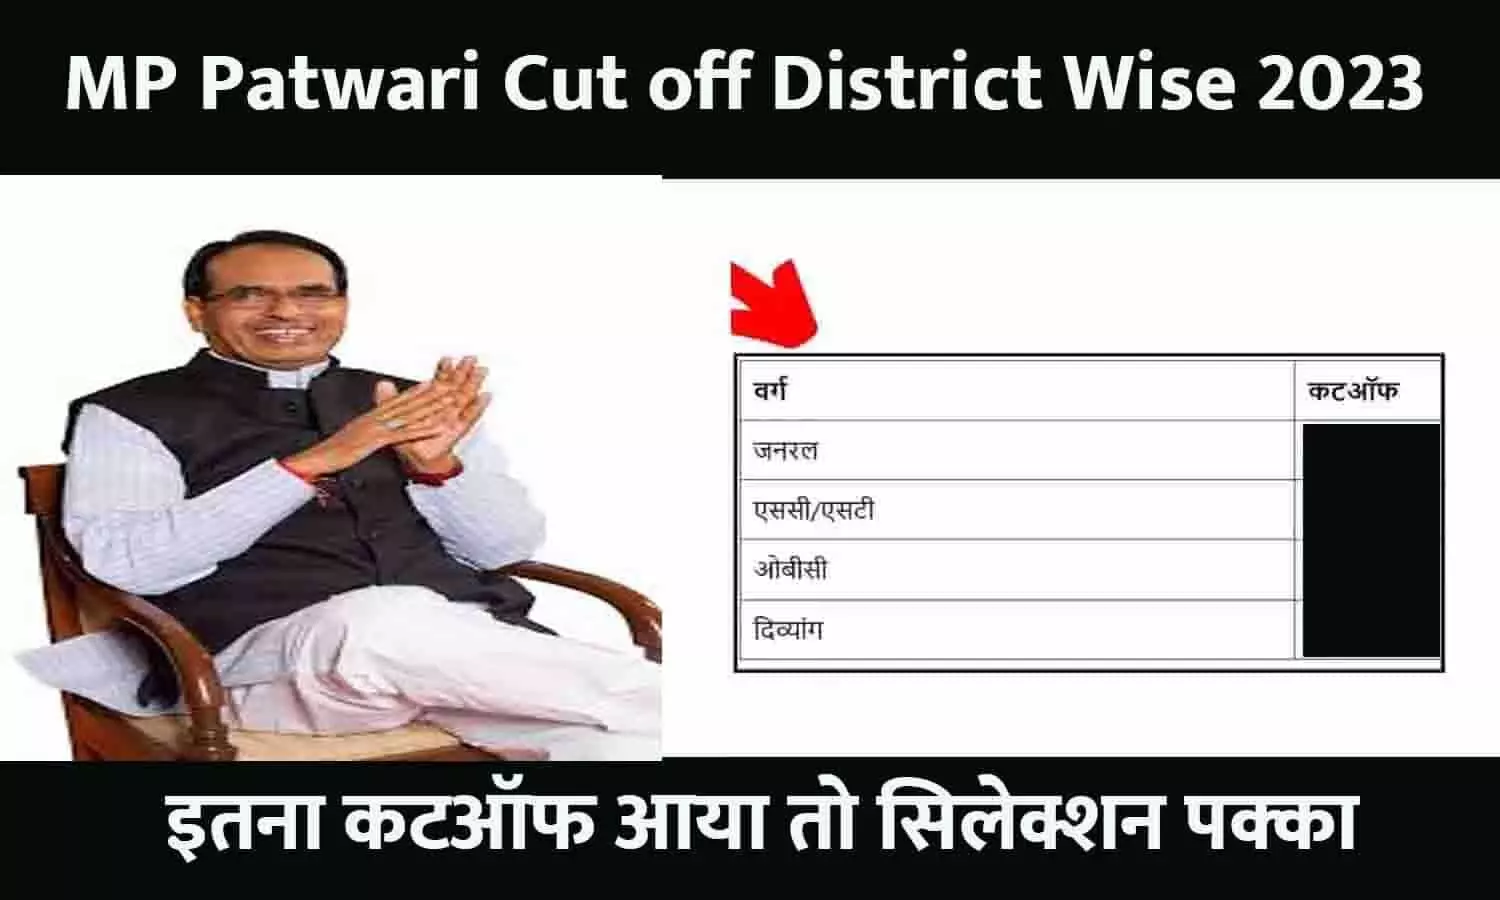 MP Patwari Cut off District Wise Kitana Jayega: 2023 का मध्यप्रदेश पटवारी का नया कटऑफ जारी